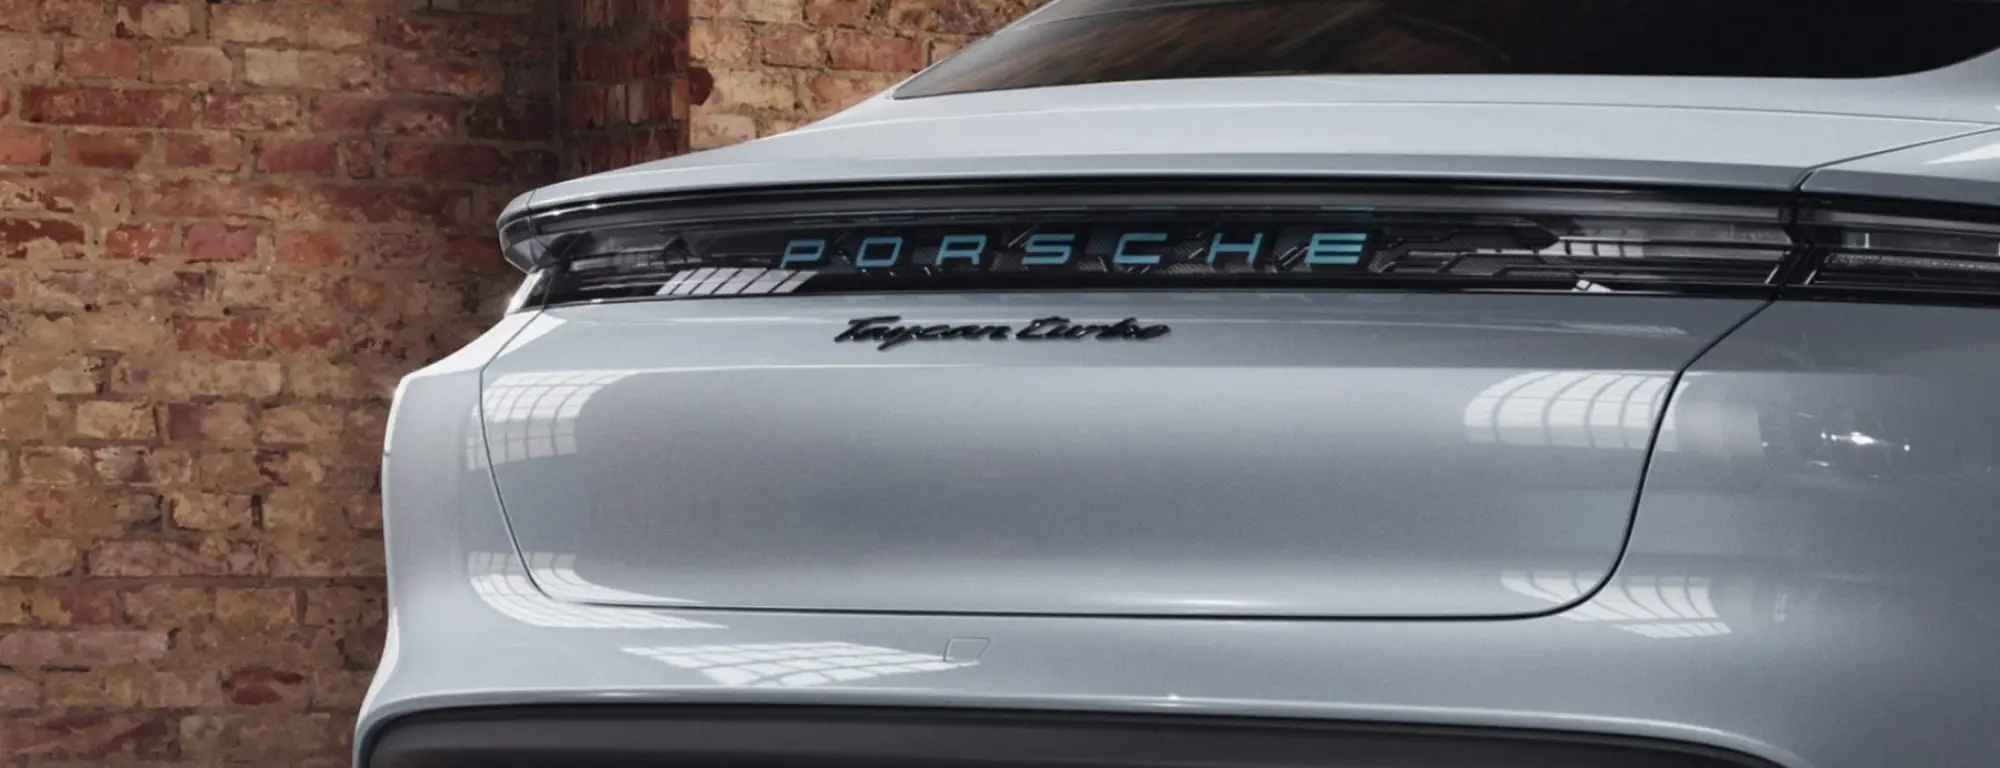 Porsche Taycan Turbo - Porsche Exclusive - 8